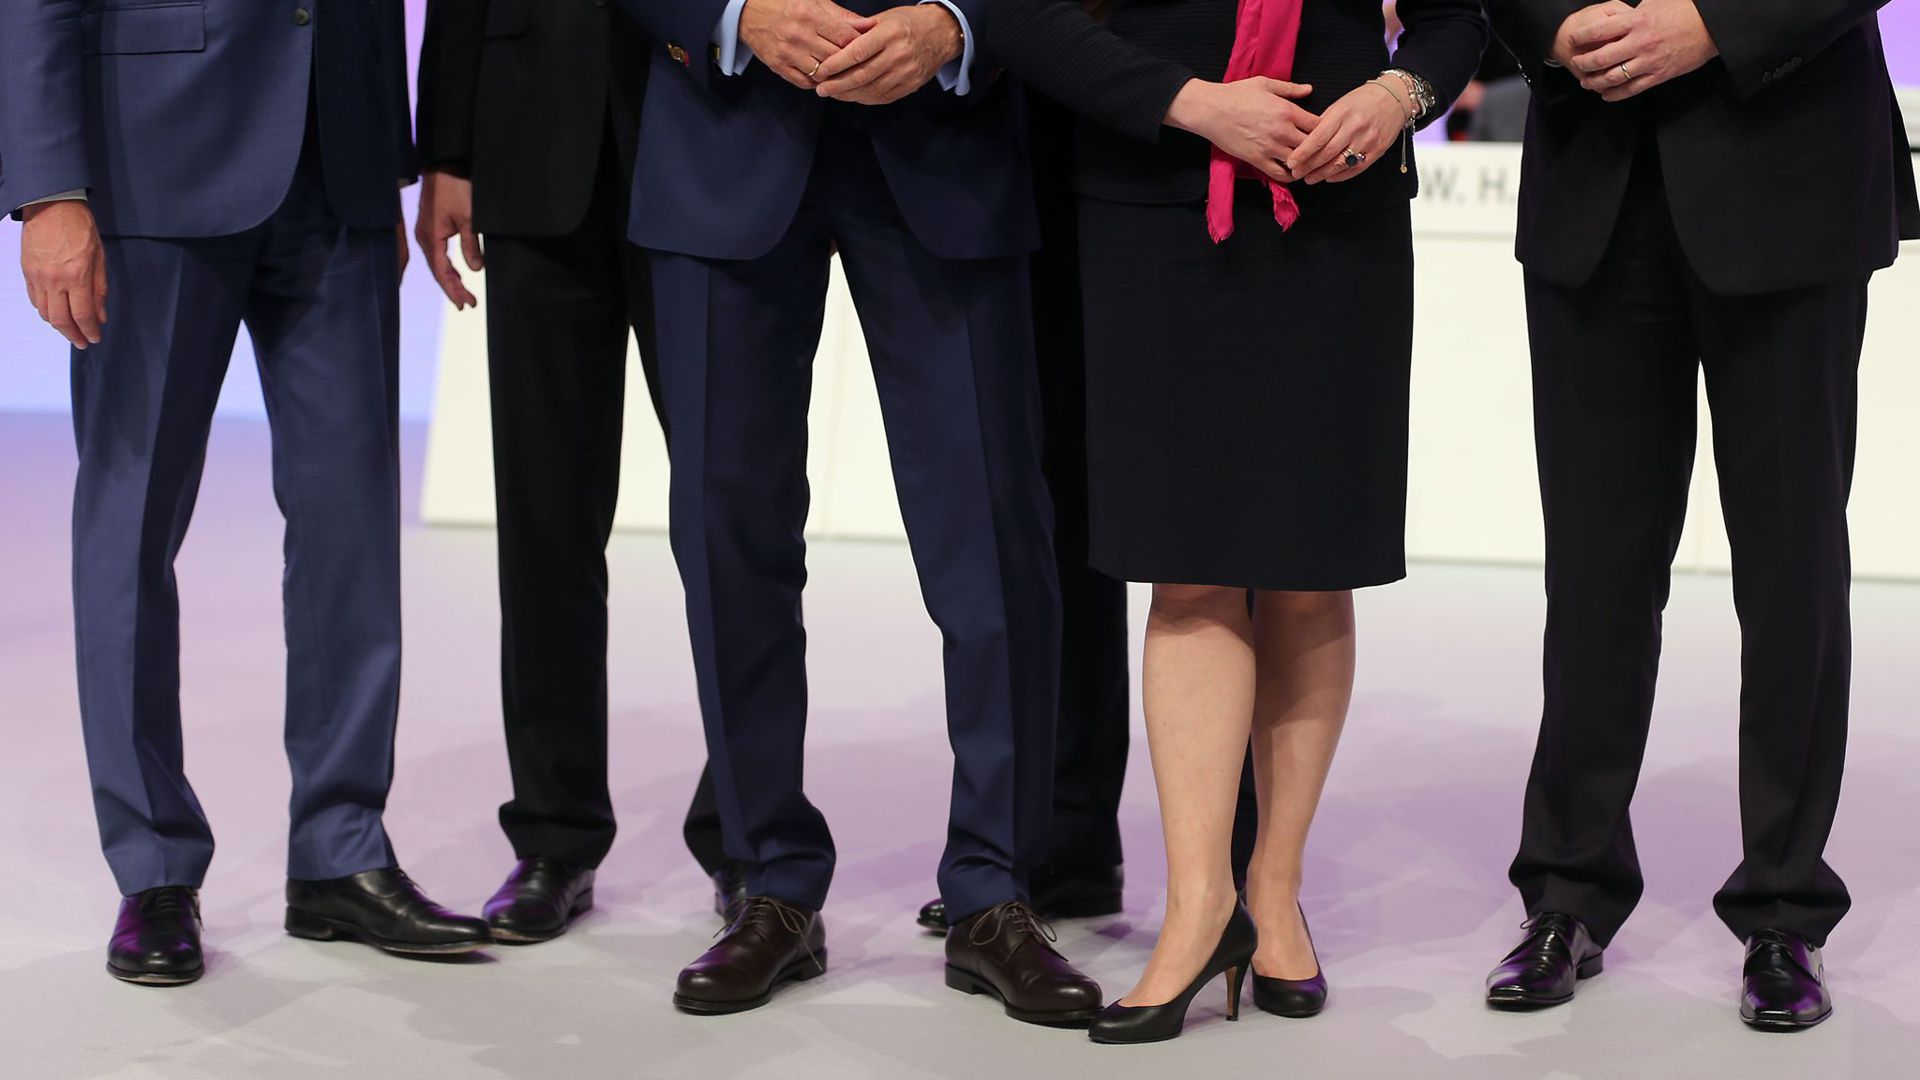 Der CDU-Wirtschaftsrat wehrt sich entschieden gegen eine Frauen-Quote.